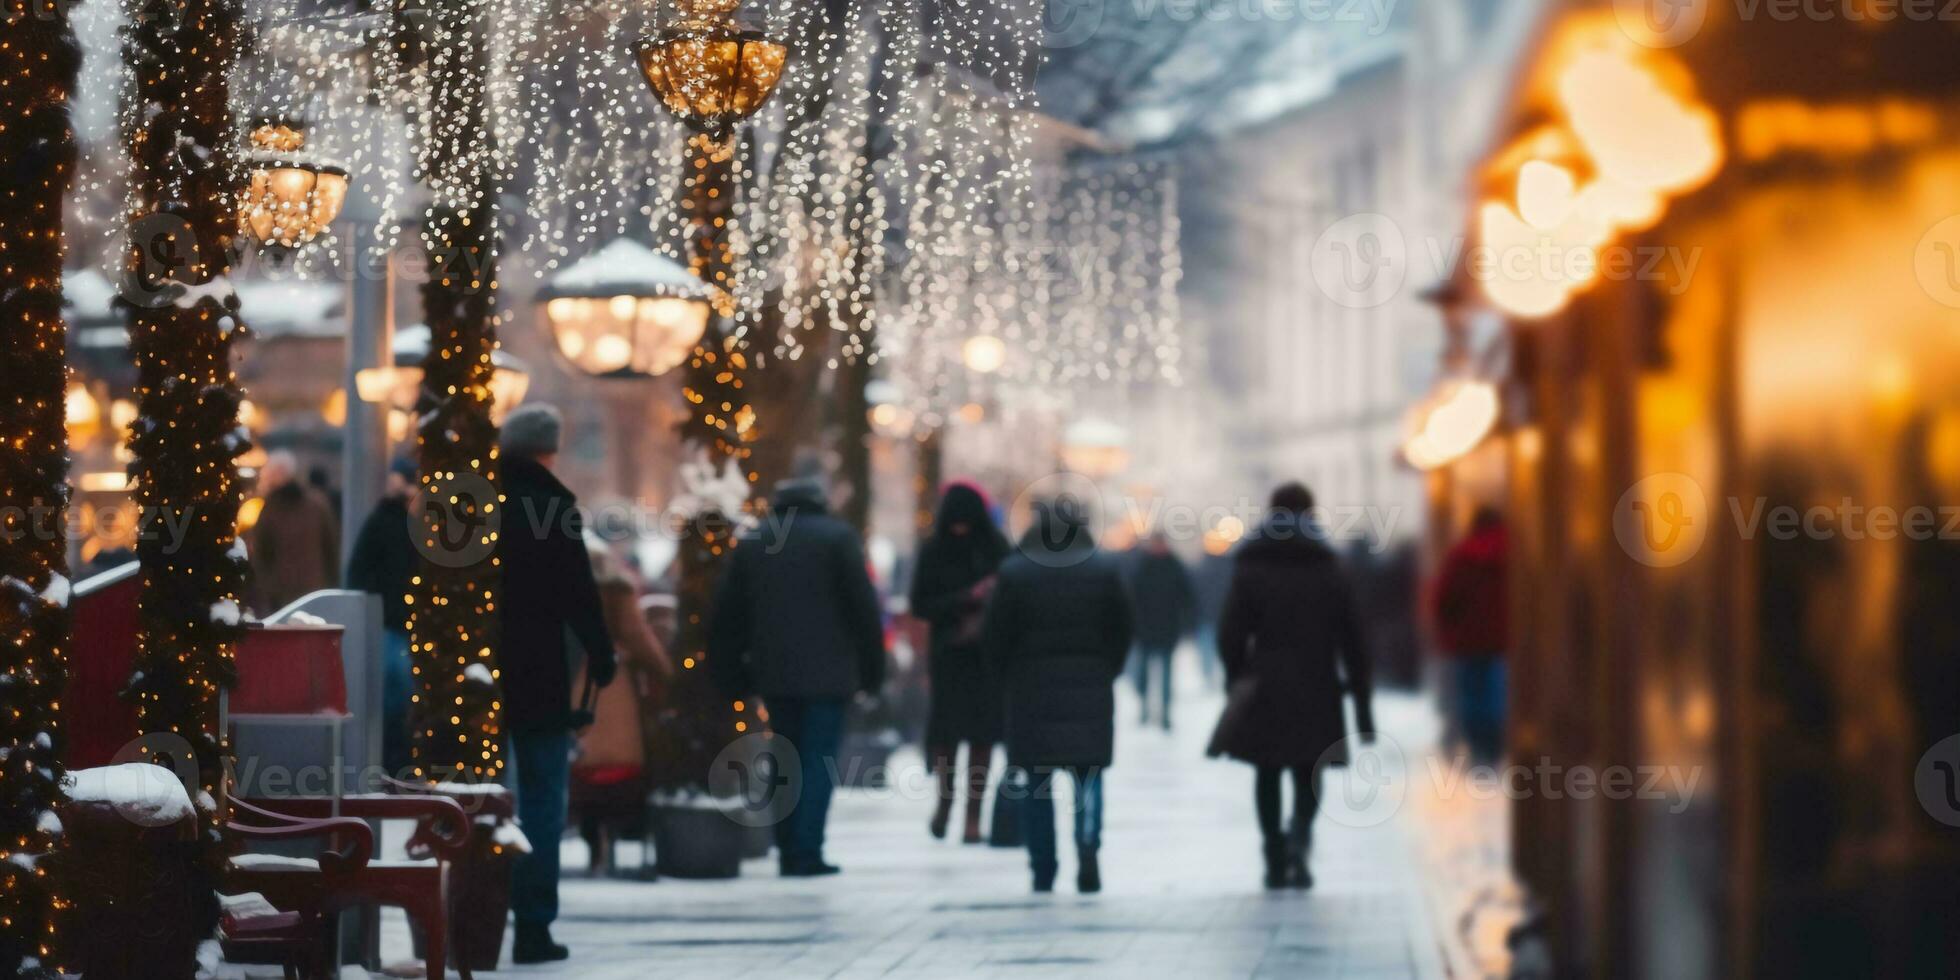 rörelse suddig gata se och rörelse suddig prople gående längs de gata i vinter- säsong, vinter jul marknadsföra foto